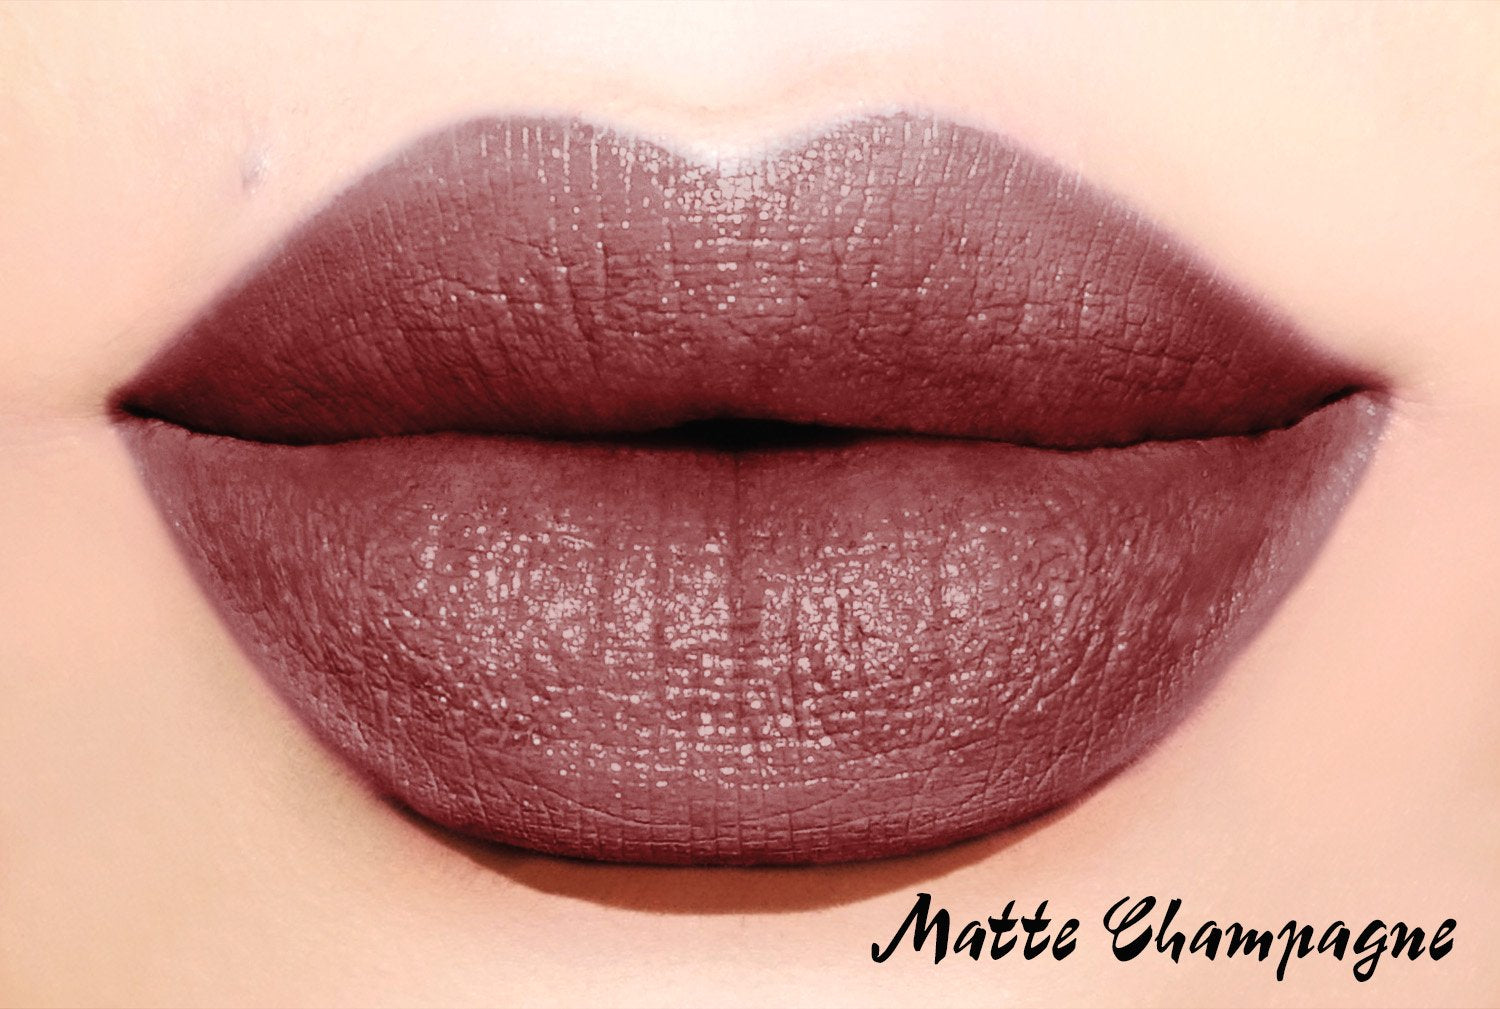 Mauve Lipsticks